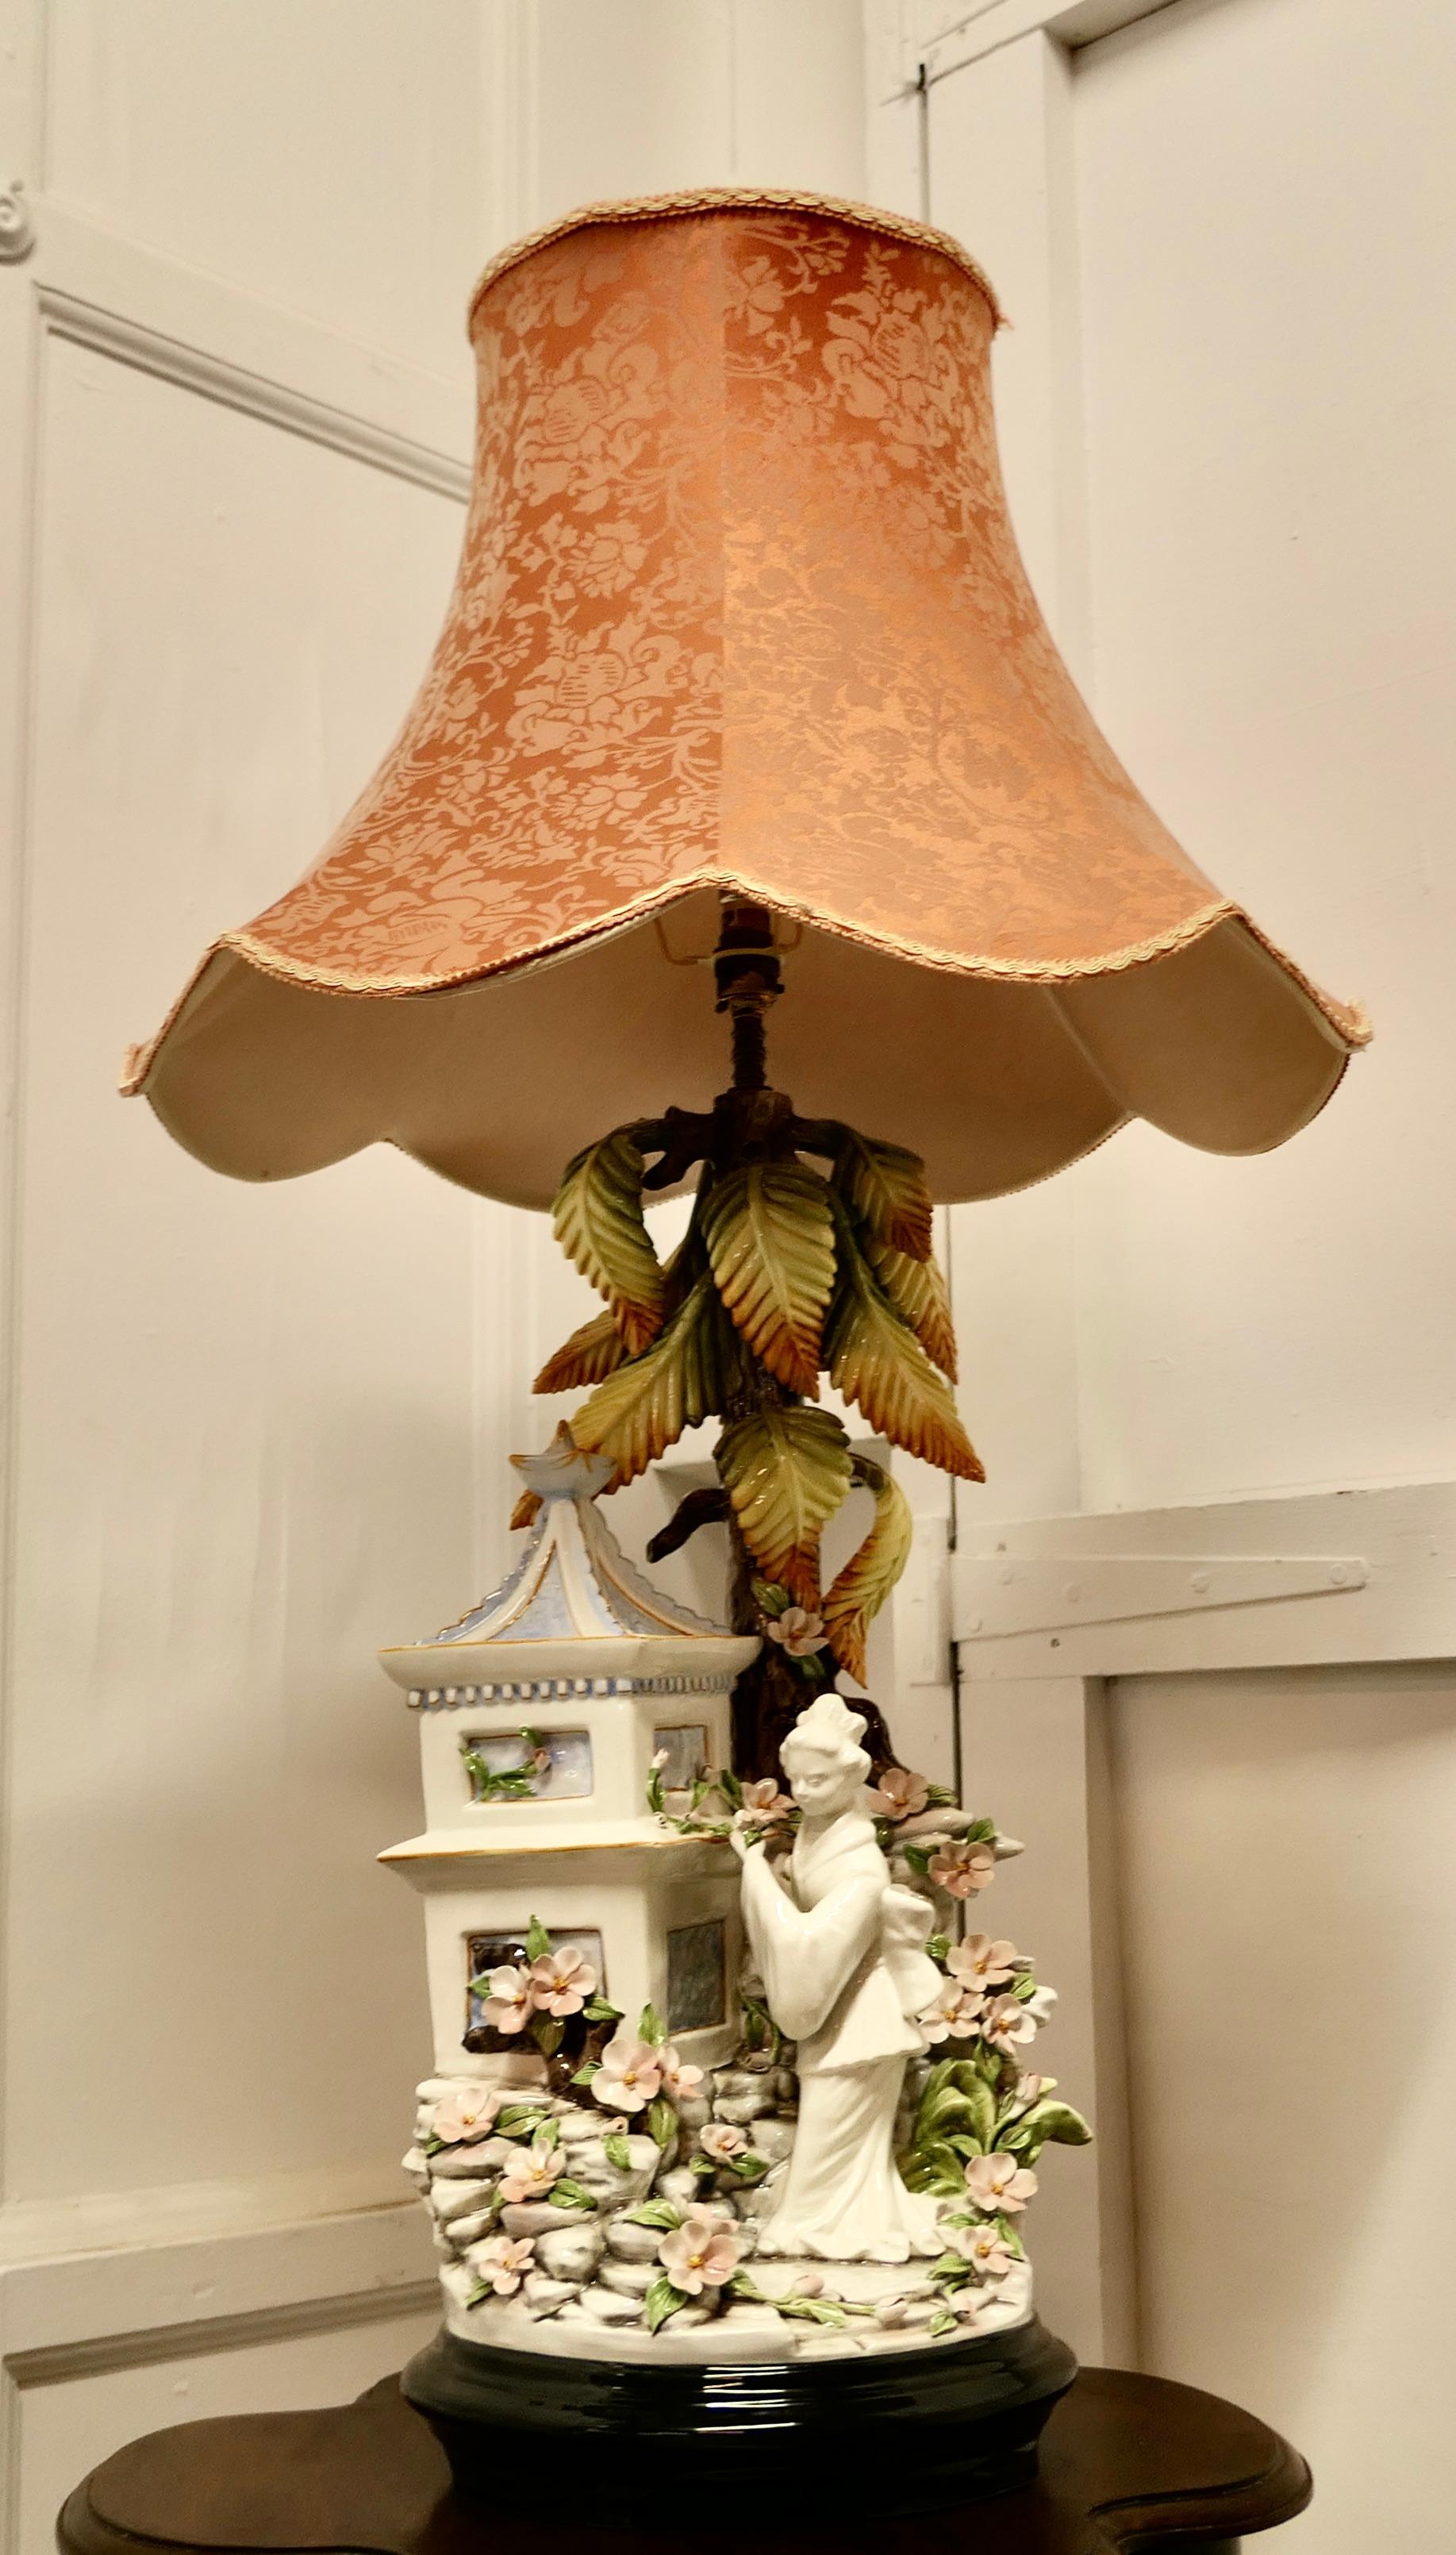 Grande lampe de table figurative en céramique de D. Polo Aiato, style Capodimonte

Il s'agit d'une lampe de grande taille et rare, la lampe représente une scène extérieure colorée avec une Geisha dans son jardin de fleurs sous un arbre à côté